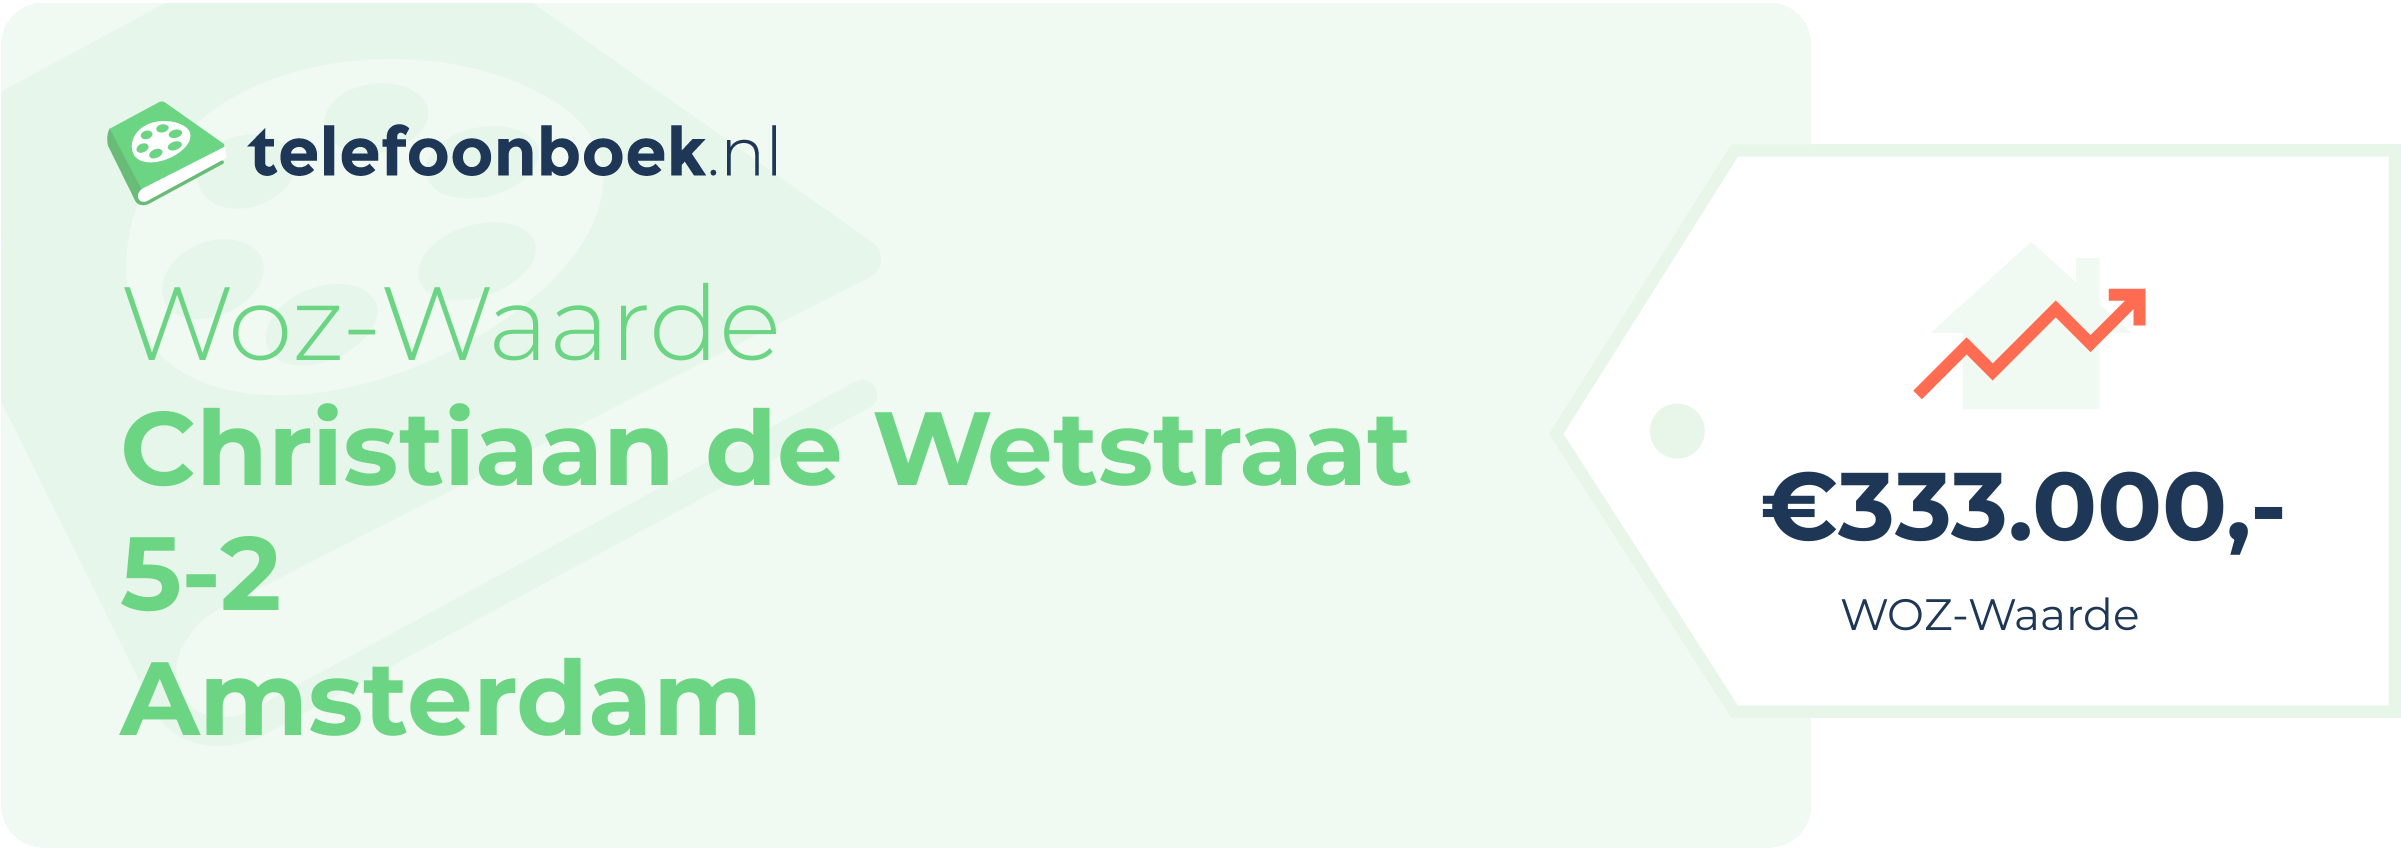 WOZ-waarde Christiaan De Wetstraat 5-2 Amsterdam